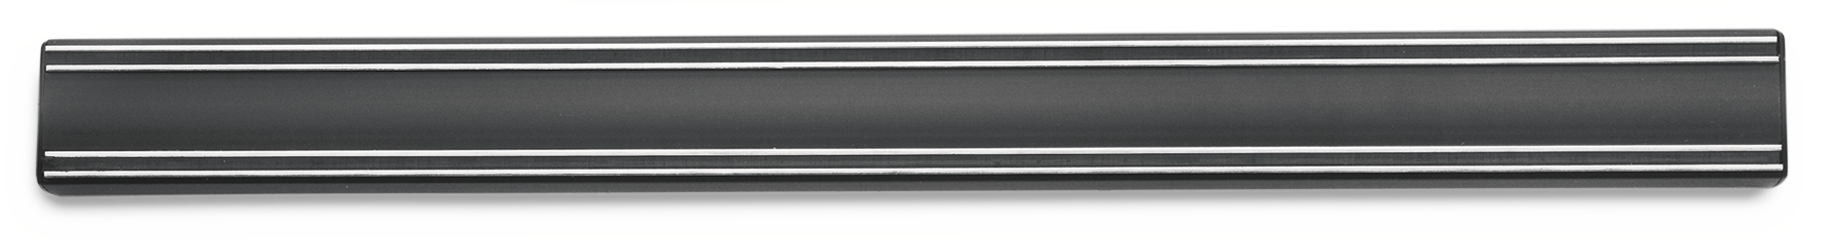 Magnethalter 50cm schwarz 7226/50 Magnethalter zur Aufbewahrung und Präsentation 